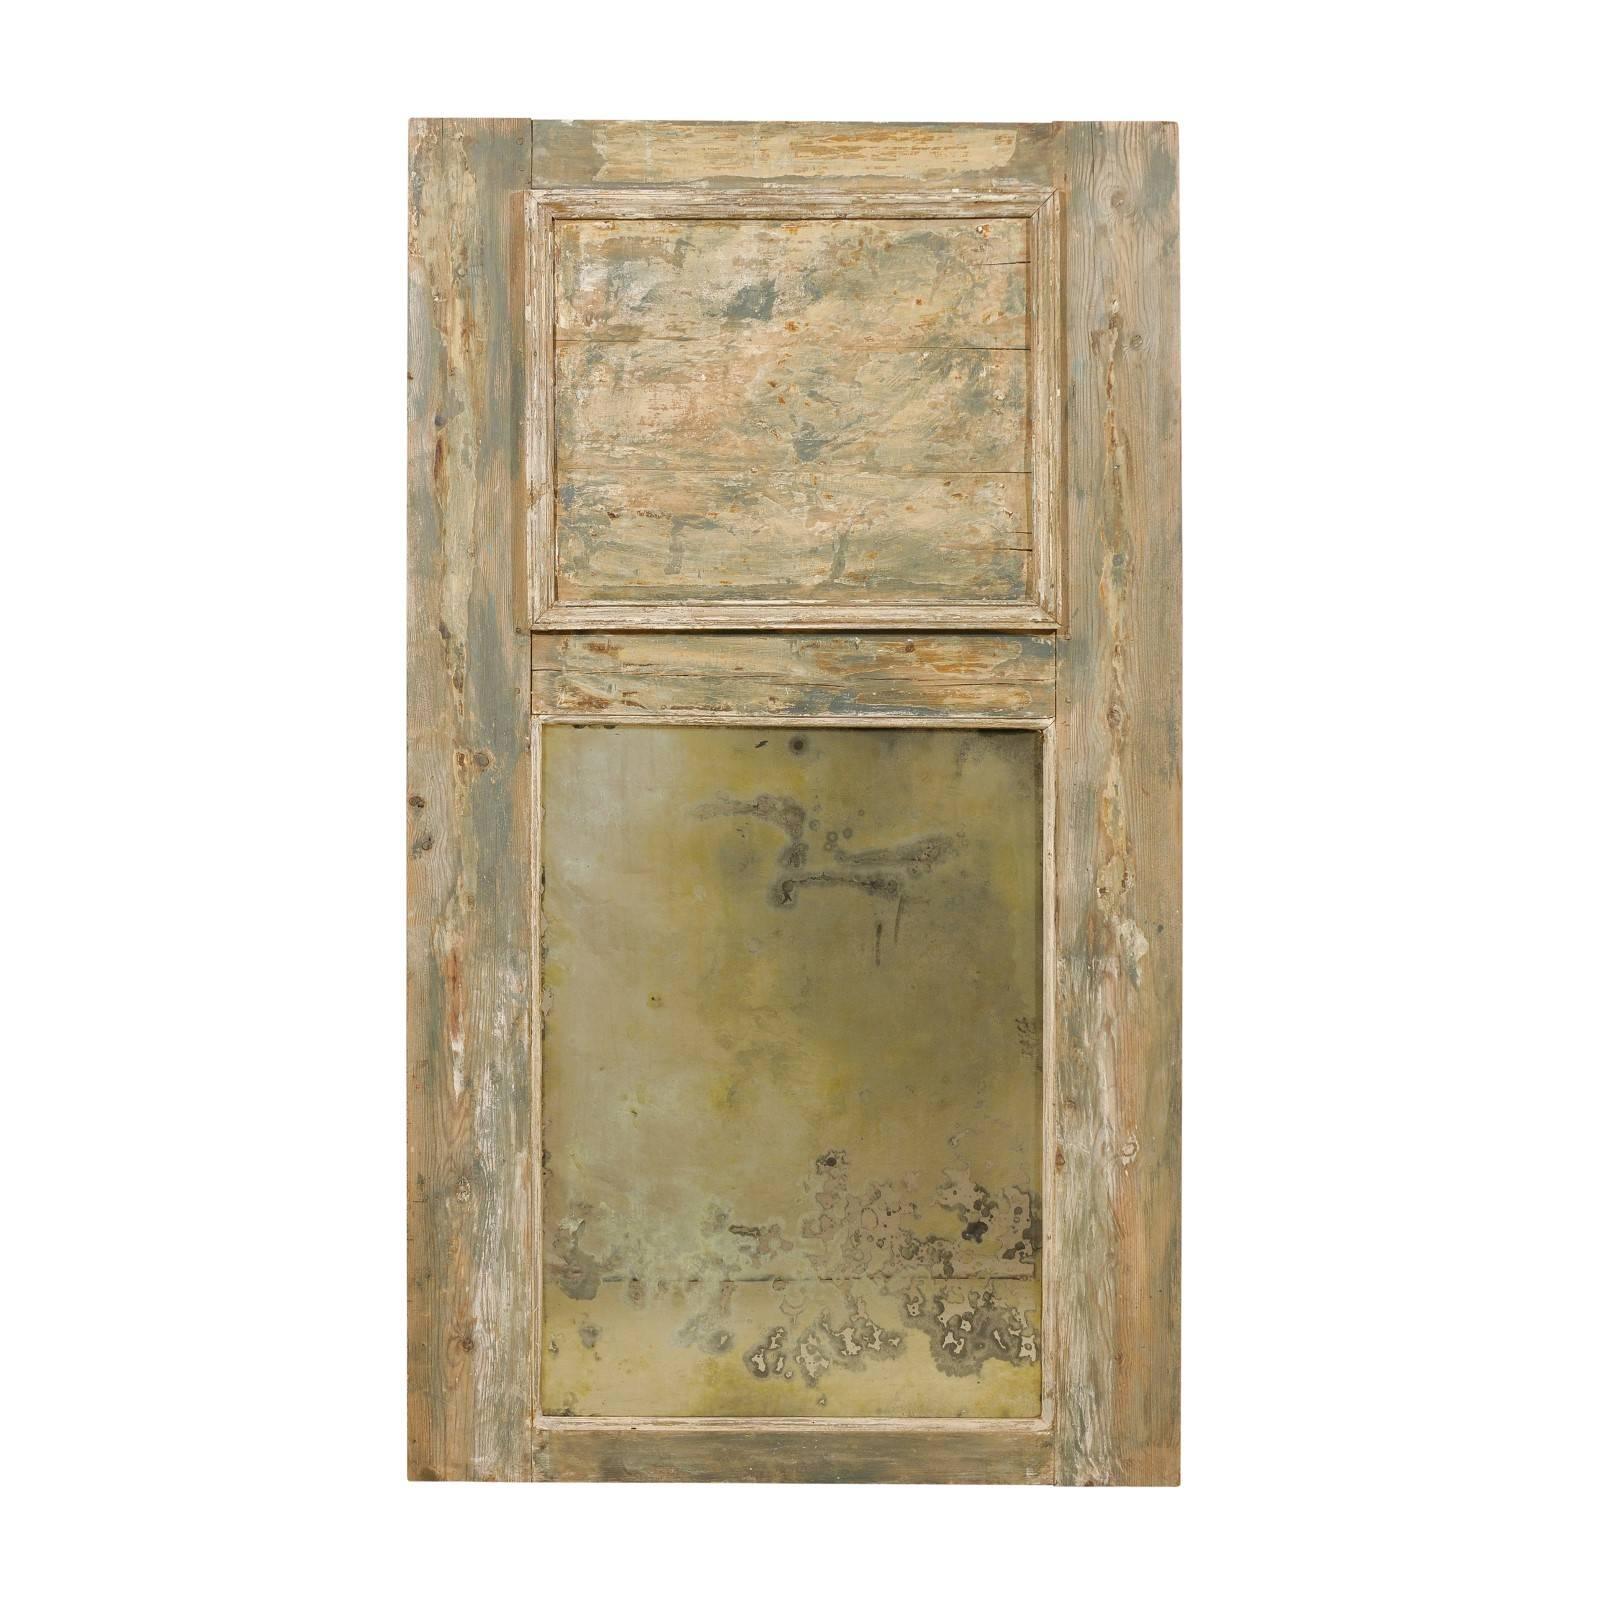 Trumeau-Spiegel des 19. Jahrhunderts, schwer, antik und mit abgeschrägter beiger Holzoberfläche, 19. Jahrhundert